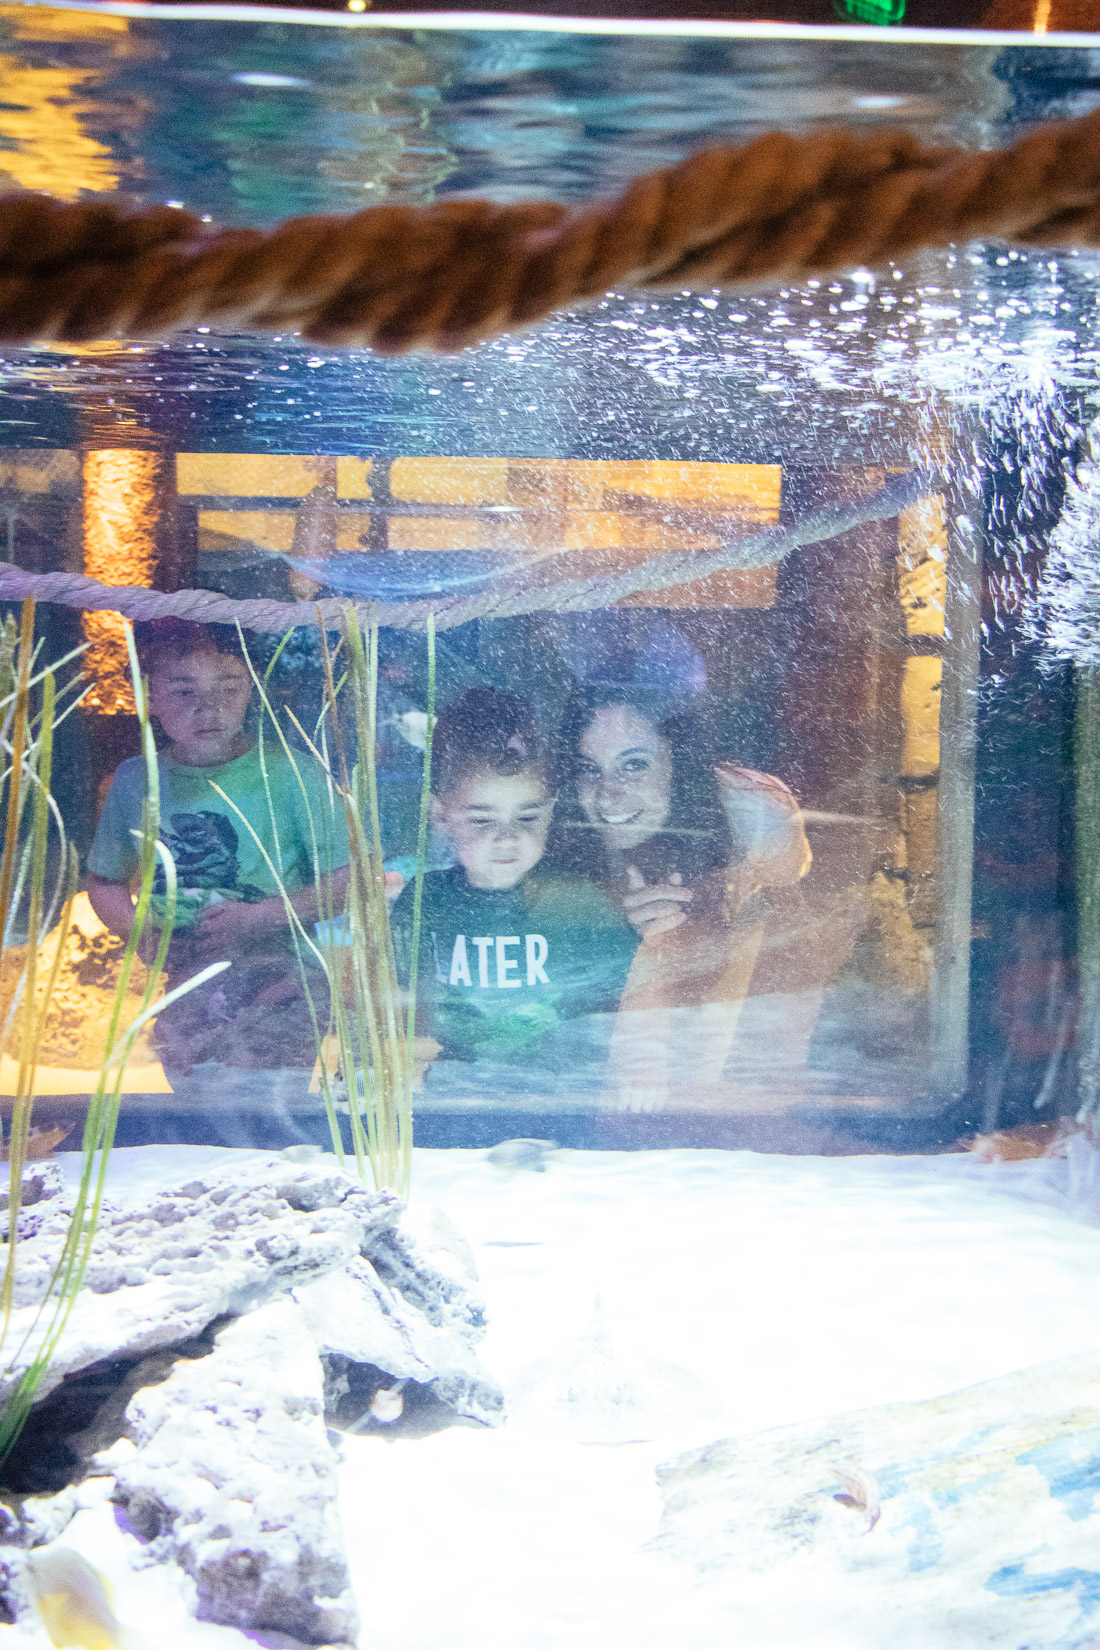 Aquarium at Concord Mills Mall